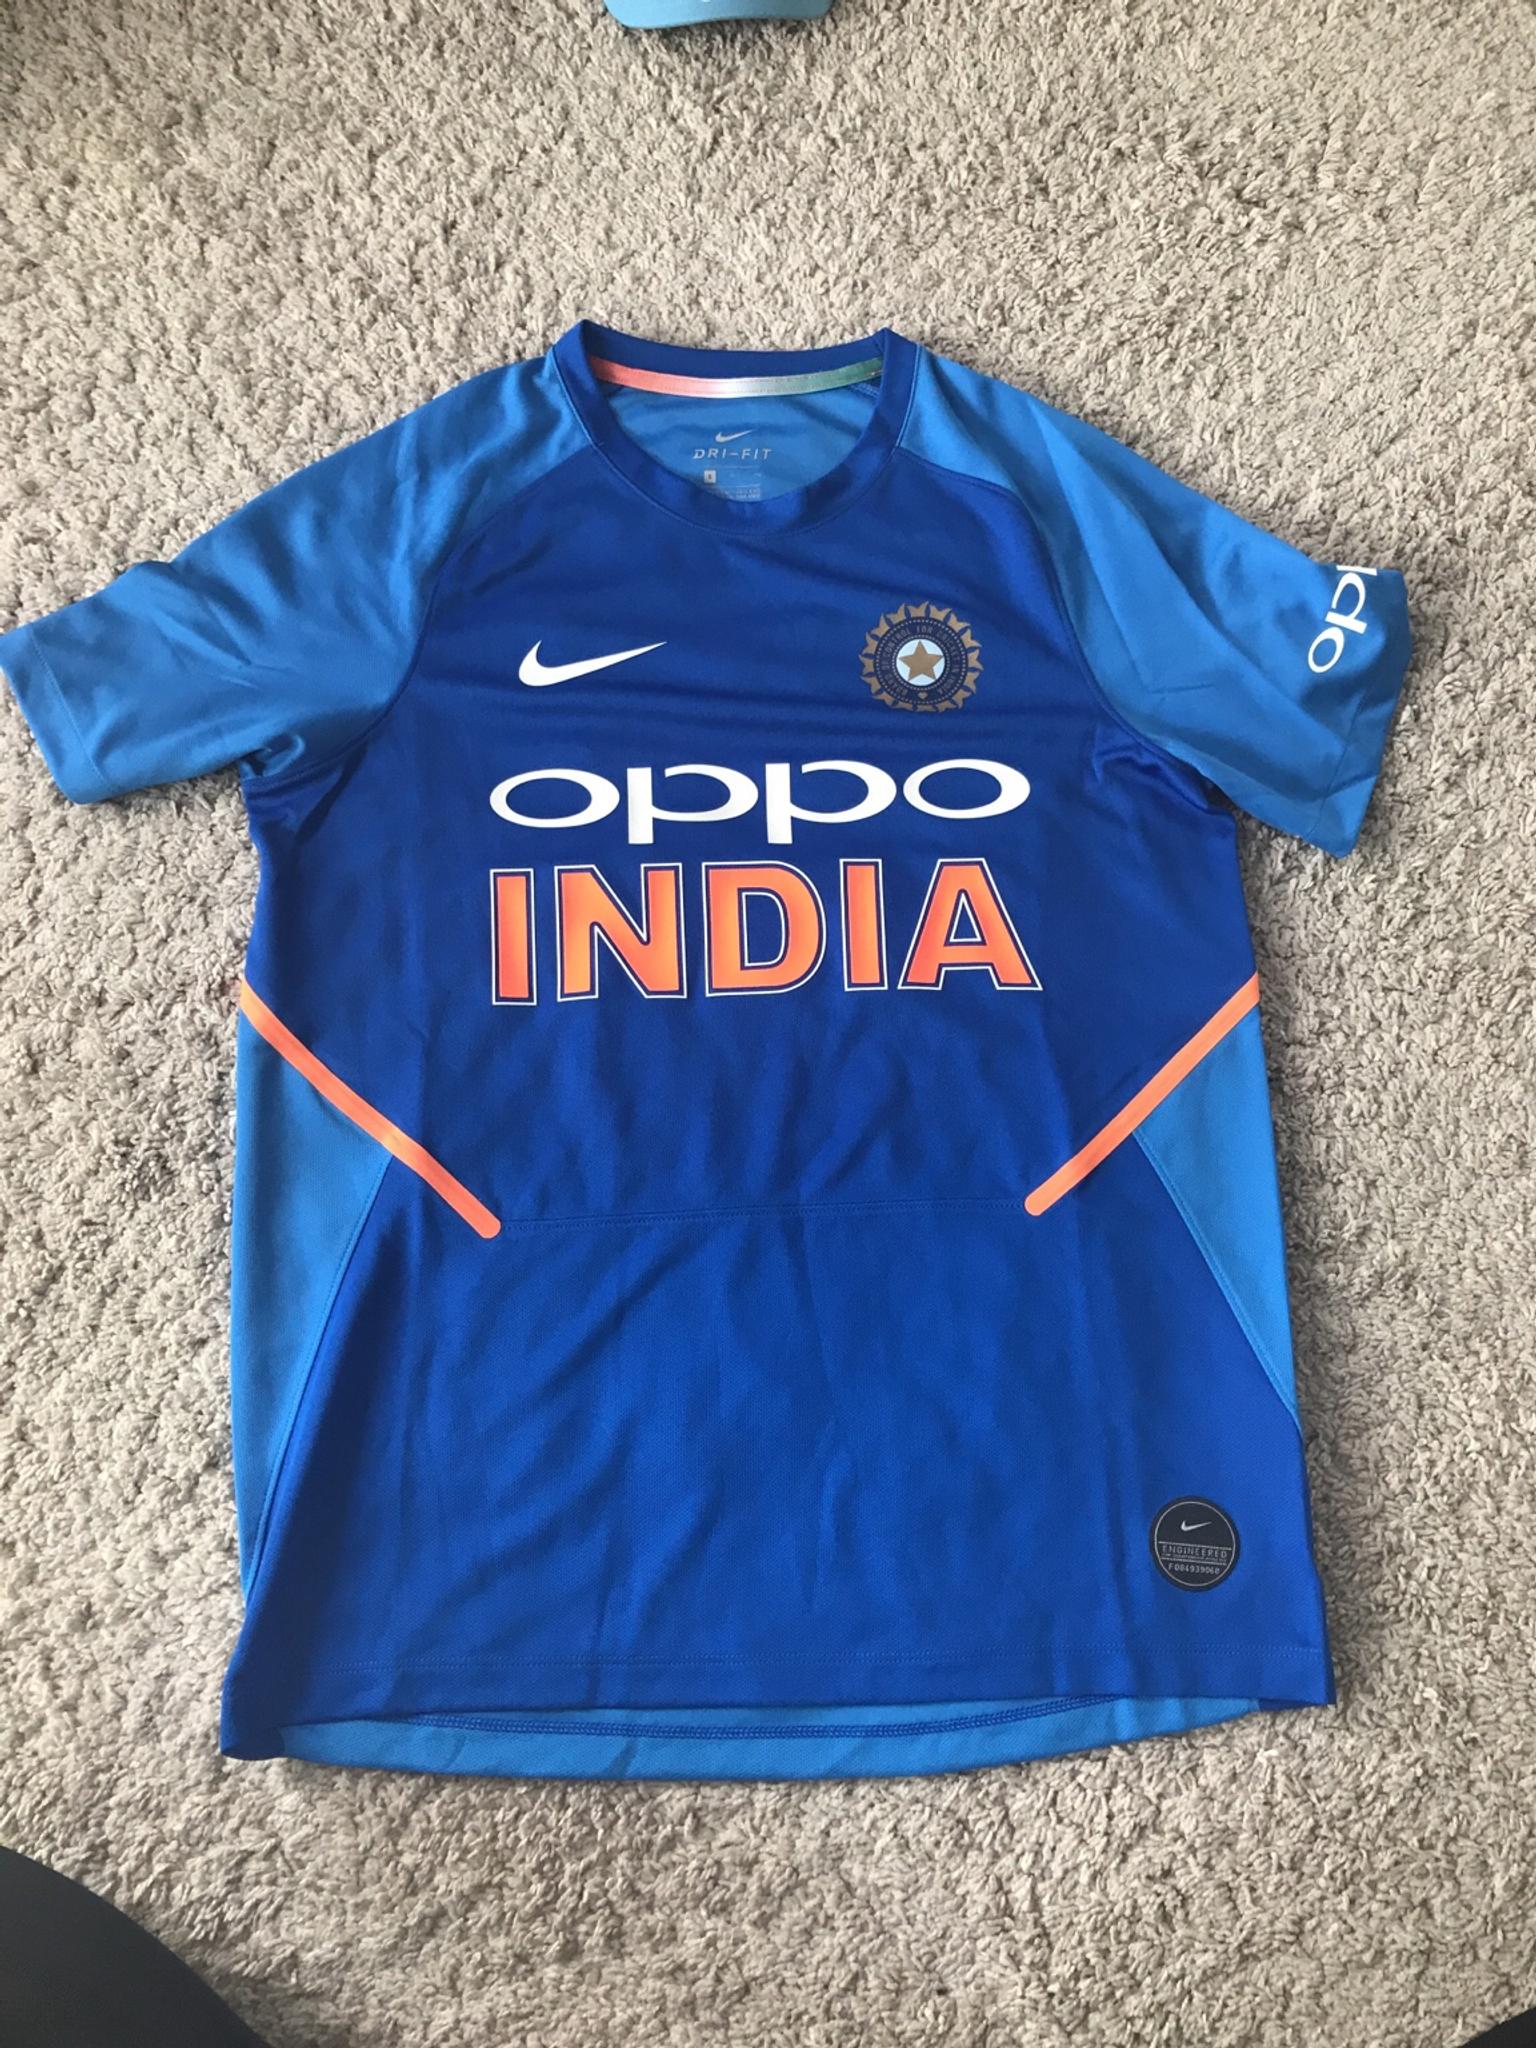 india cricket shirt 2019 nike